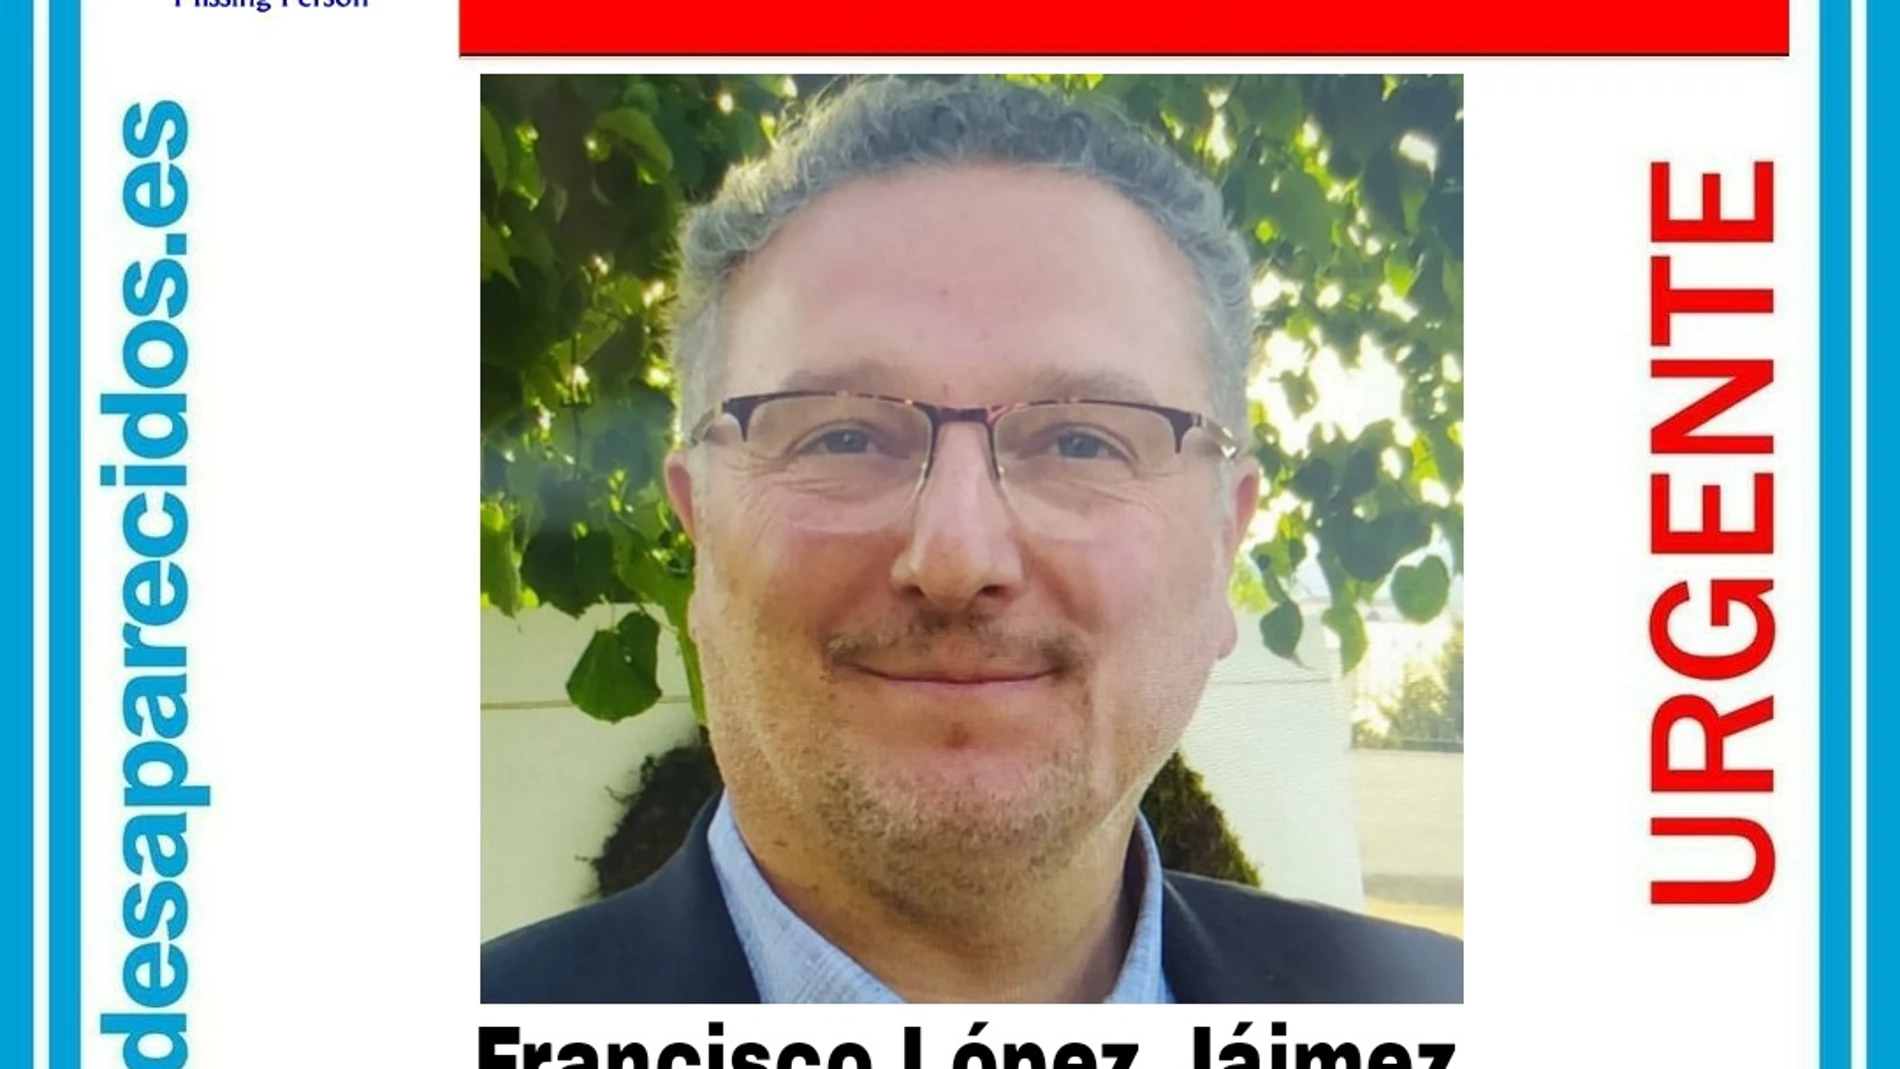 Desaparece Francisco López Jáimez, presidente de un colegio de Valdemoro